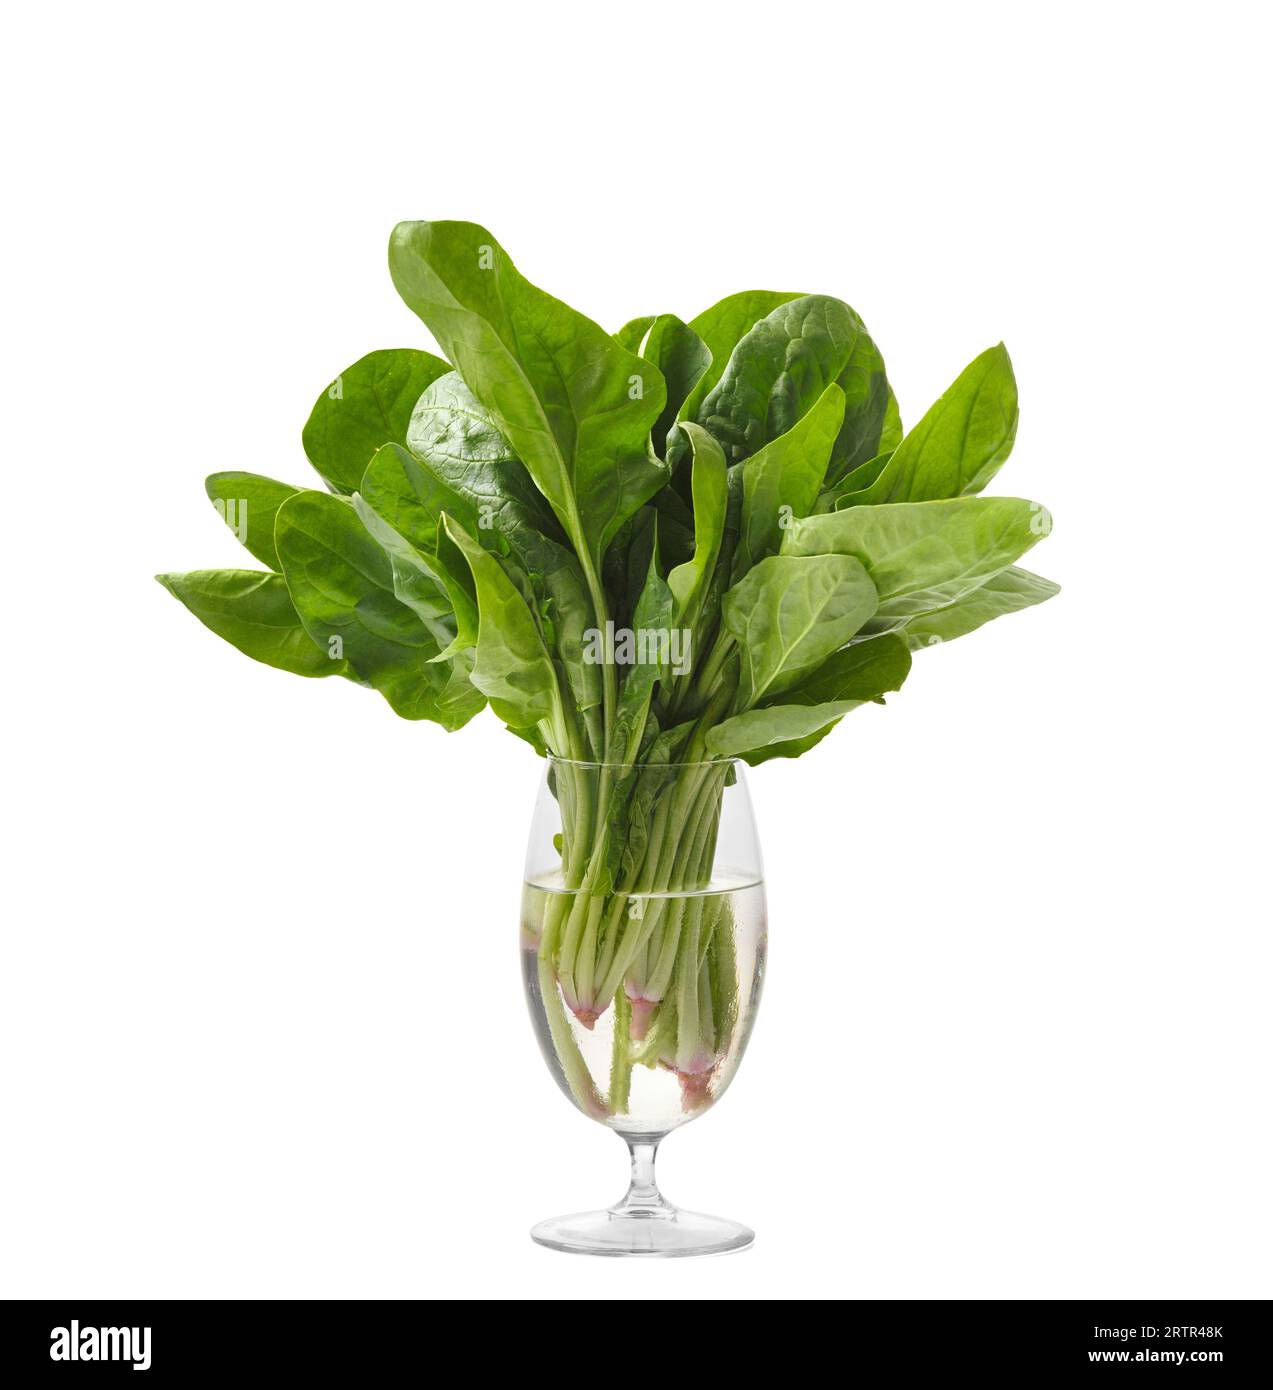 Ein paar frische grüne Bio-Spinat in einem klaren Glasbecher mit Wasser auf weißem Hintergrund. Nützliche Produkte, eine Quelle von Ballaststoffen, Vitaminen, Mineralien Stockfoto